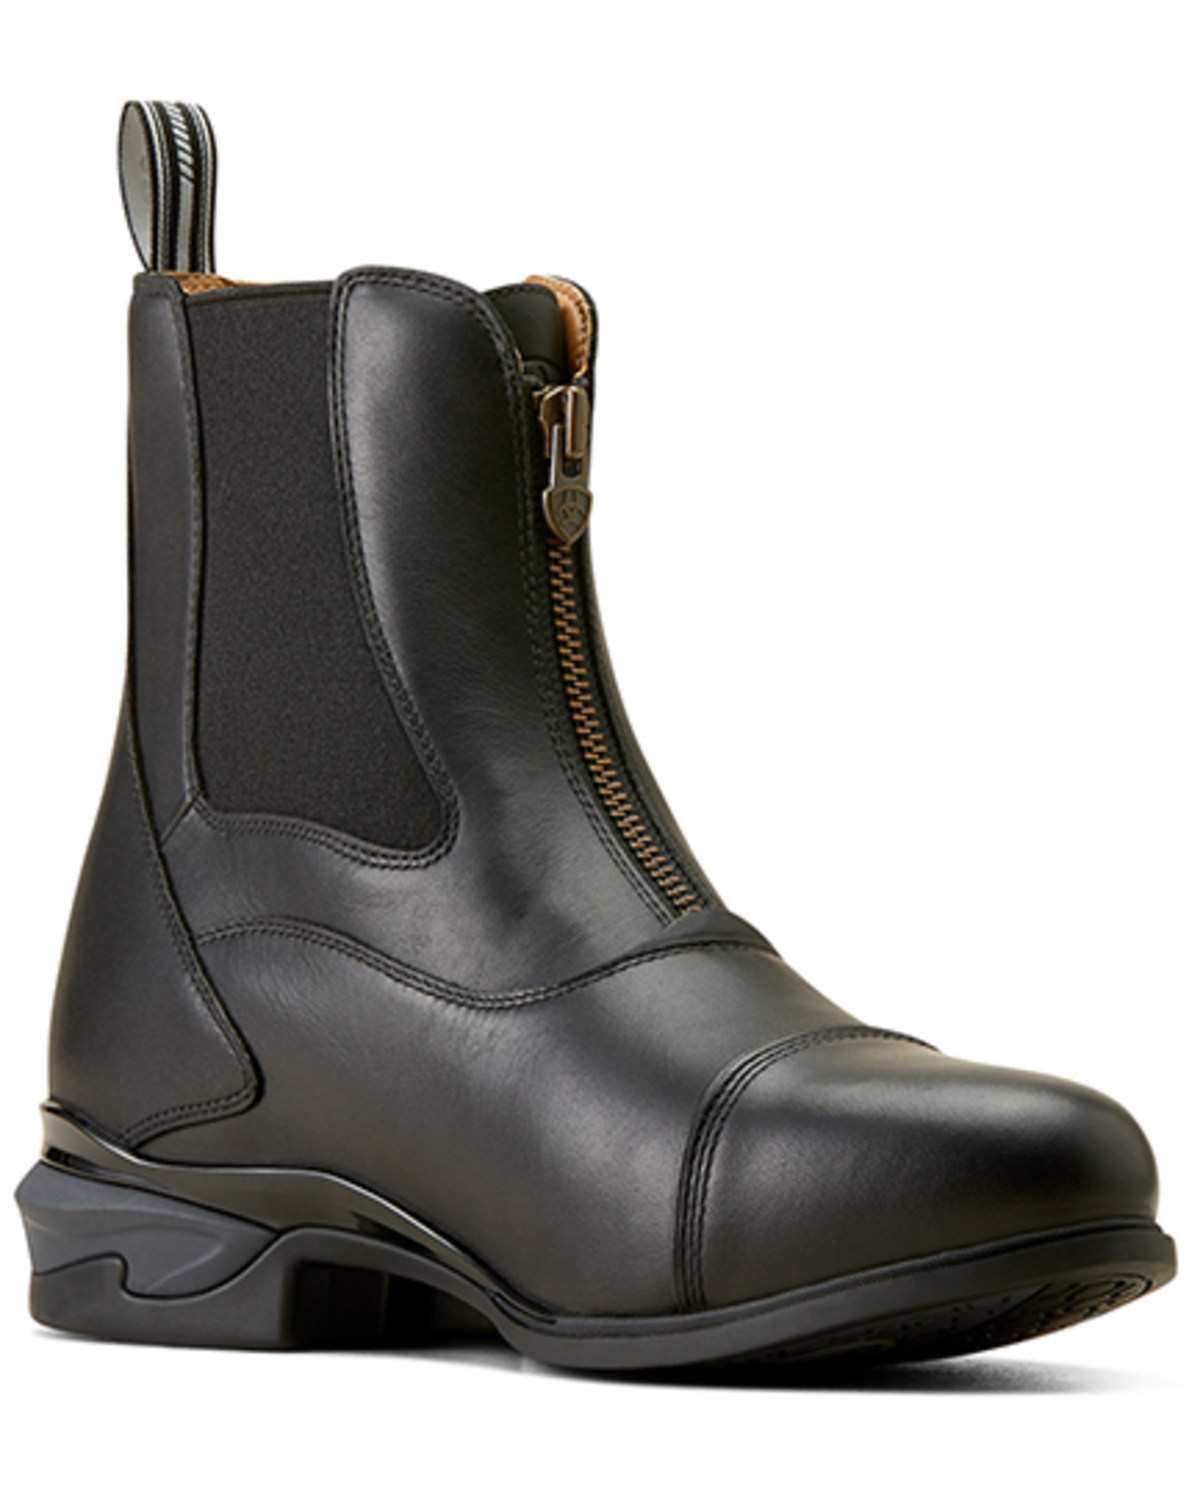 Ariat Men's Devon Zip Paddock Boots